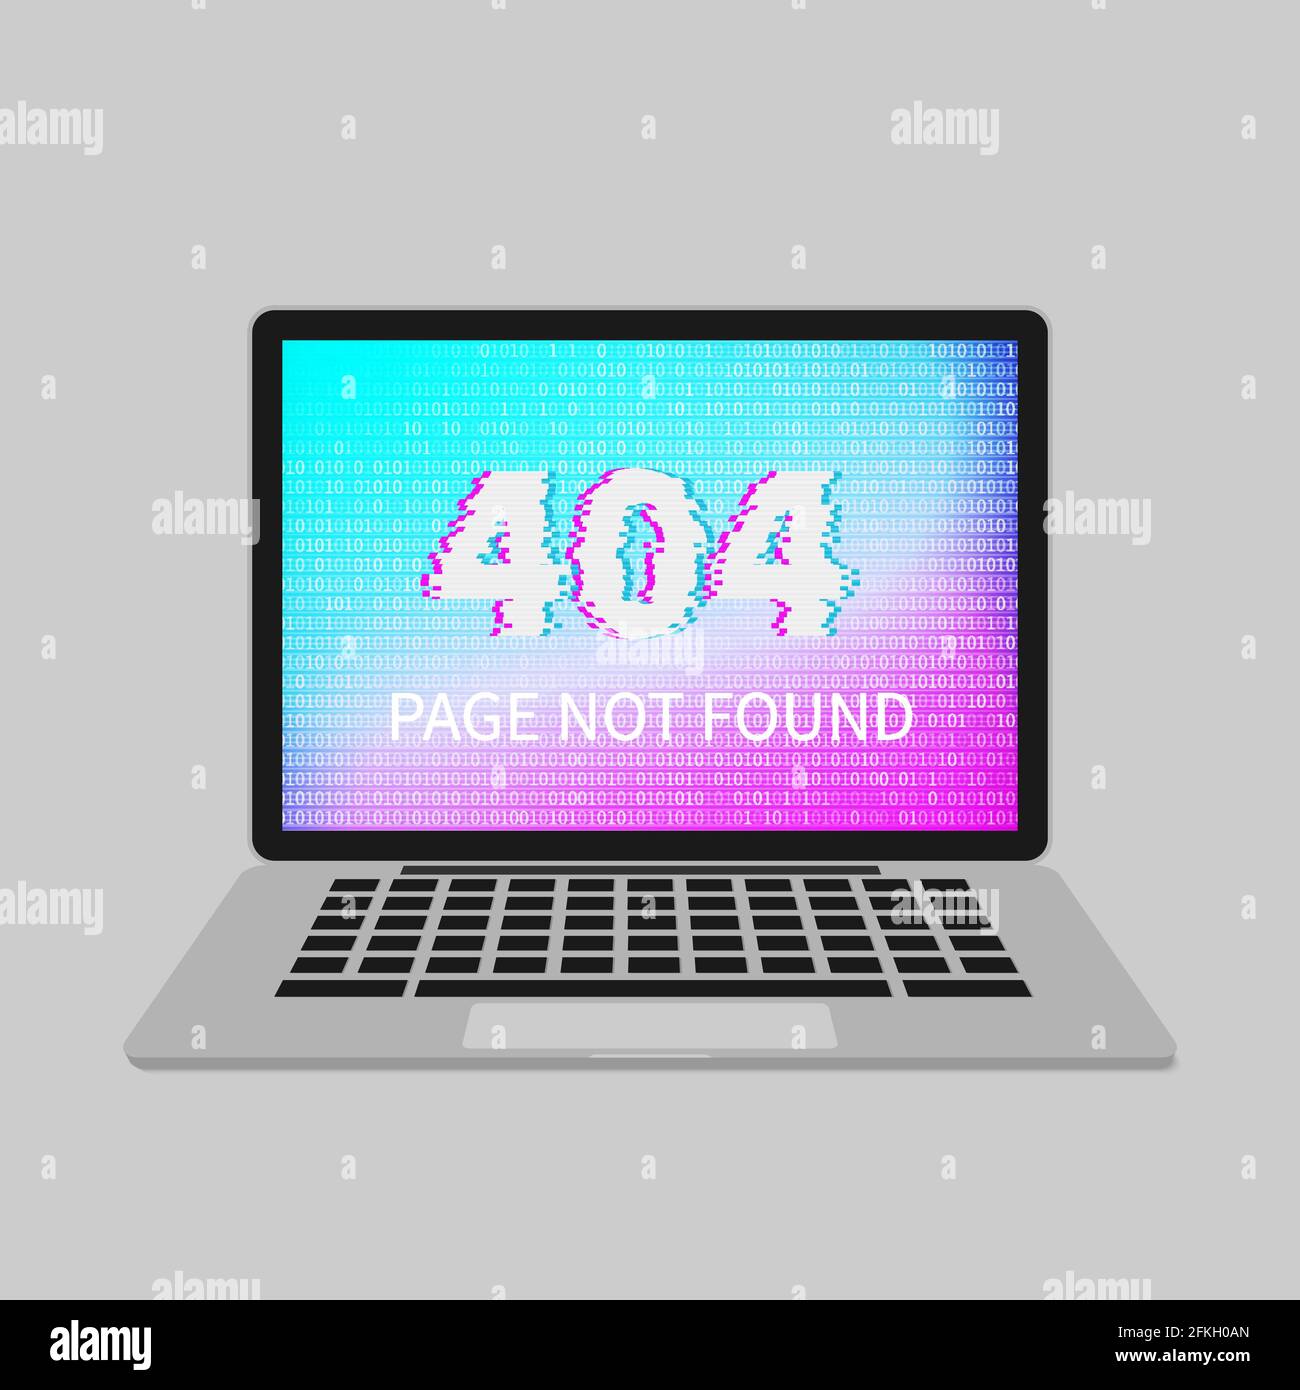 Lỗi màn hình 404 trên máy tính của bạn có thể gây ra sự khó chịu và không muốn tiếp tục truy cập trang khác. Nhưng đừng quá lo lắng, chúng tôi sẽ giúp bạn giải quyết vấn đề này! Tại website của chúng tôi, chúng tôi đưa ra giải pháp thực tế và hoàn toàn miễn phí để giúp các bạn khắc phục sự cố màn hình 404 một cách dễ dàng hơn. 